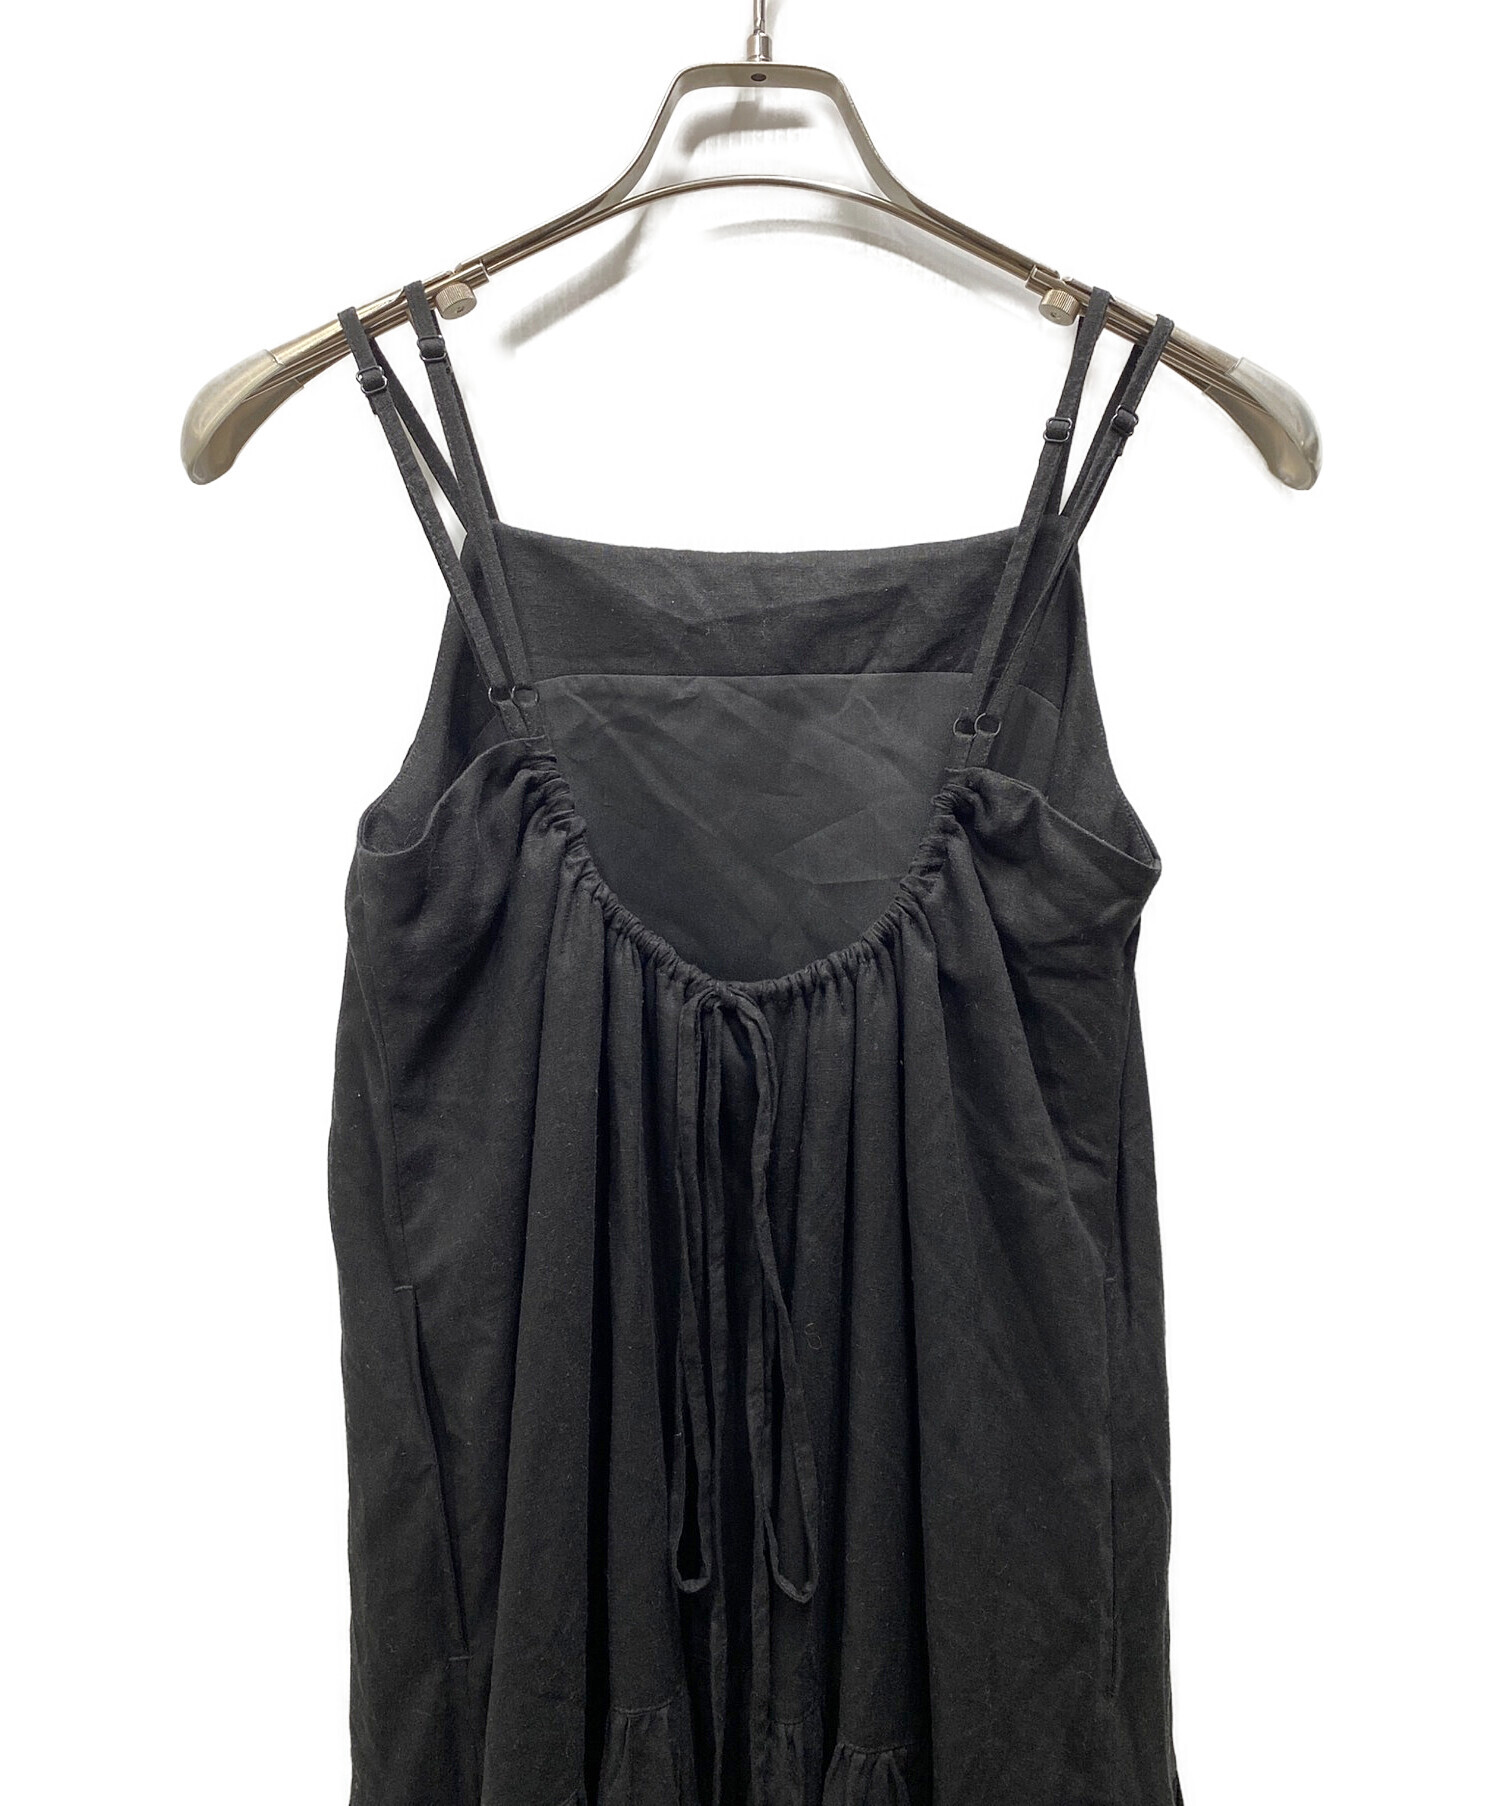 ロングワンピース/マキシワンピースKAIEKA Tiered Camisole Dress / Black